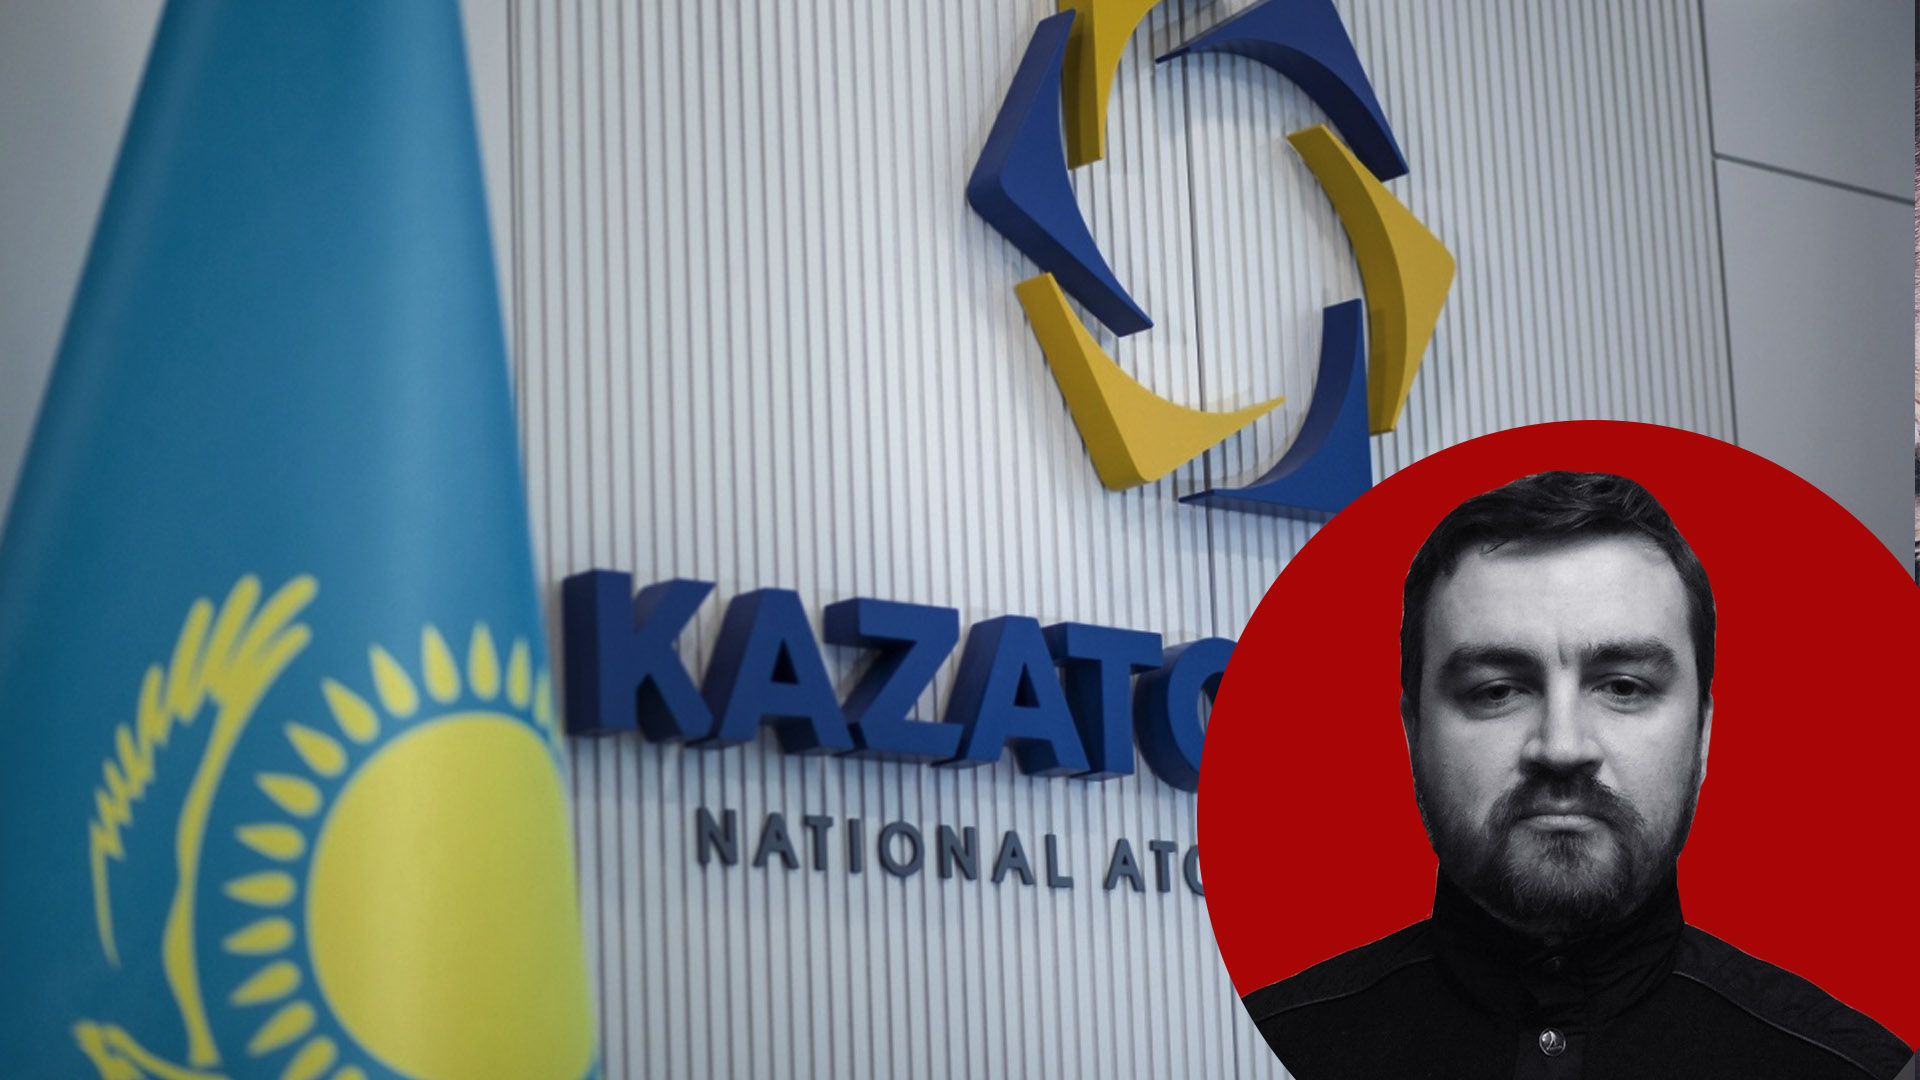 Борьба за казахский уран совпала с попыткой госпереворота: лондонских спекулянтов могут попросить на выход